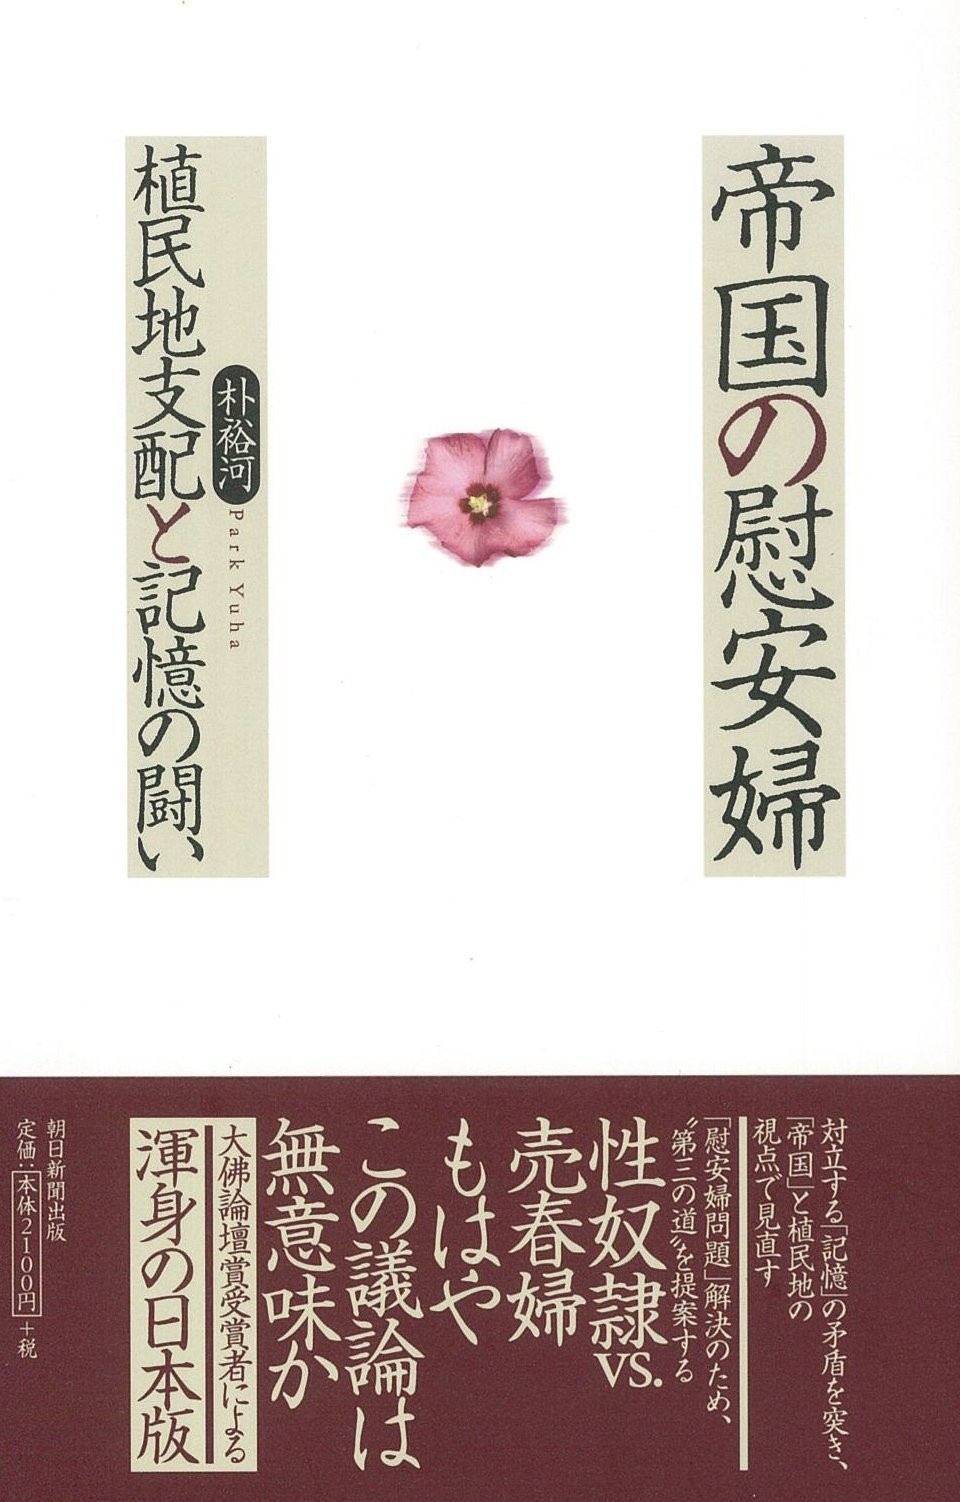 「帝国の慰安婦」は日本語版も出版されている